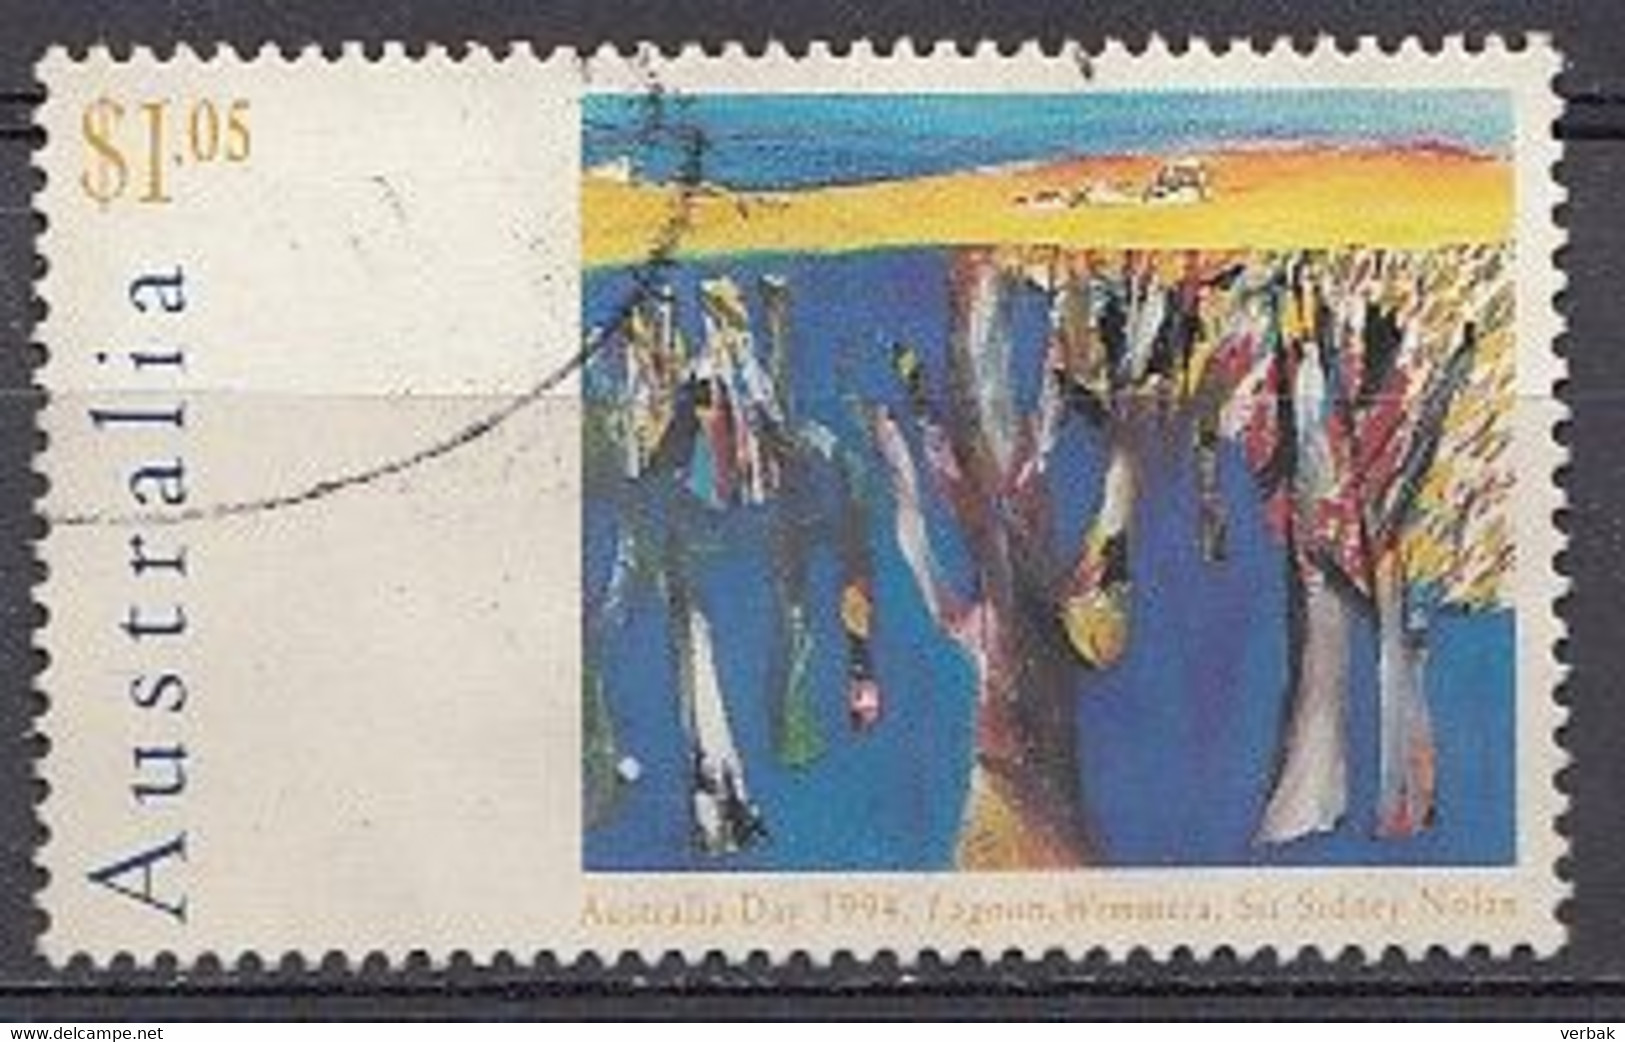 Australie 1994  Mi.nr.:1383 Landschaftsgemälde   Oblitérés / Used / Gestempeld - Used Stamps